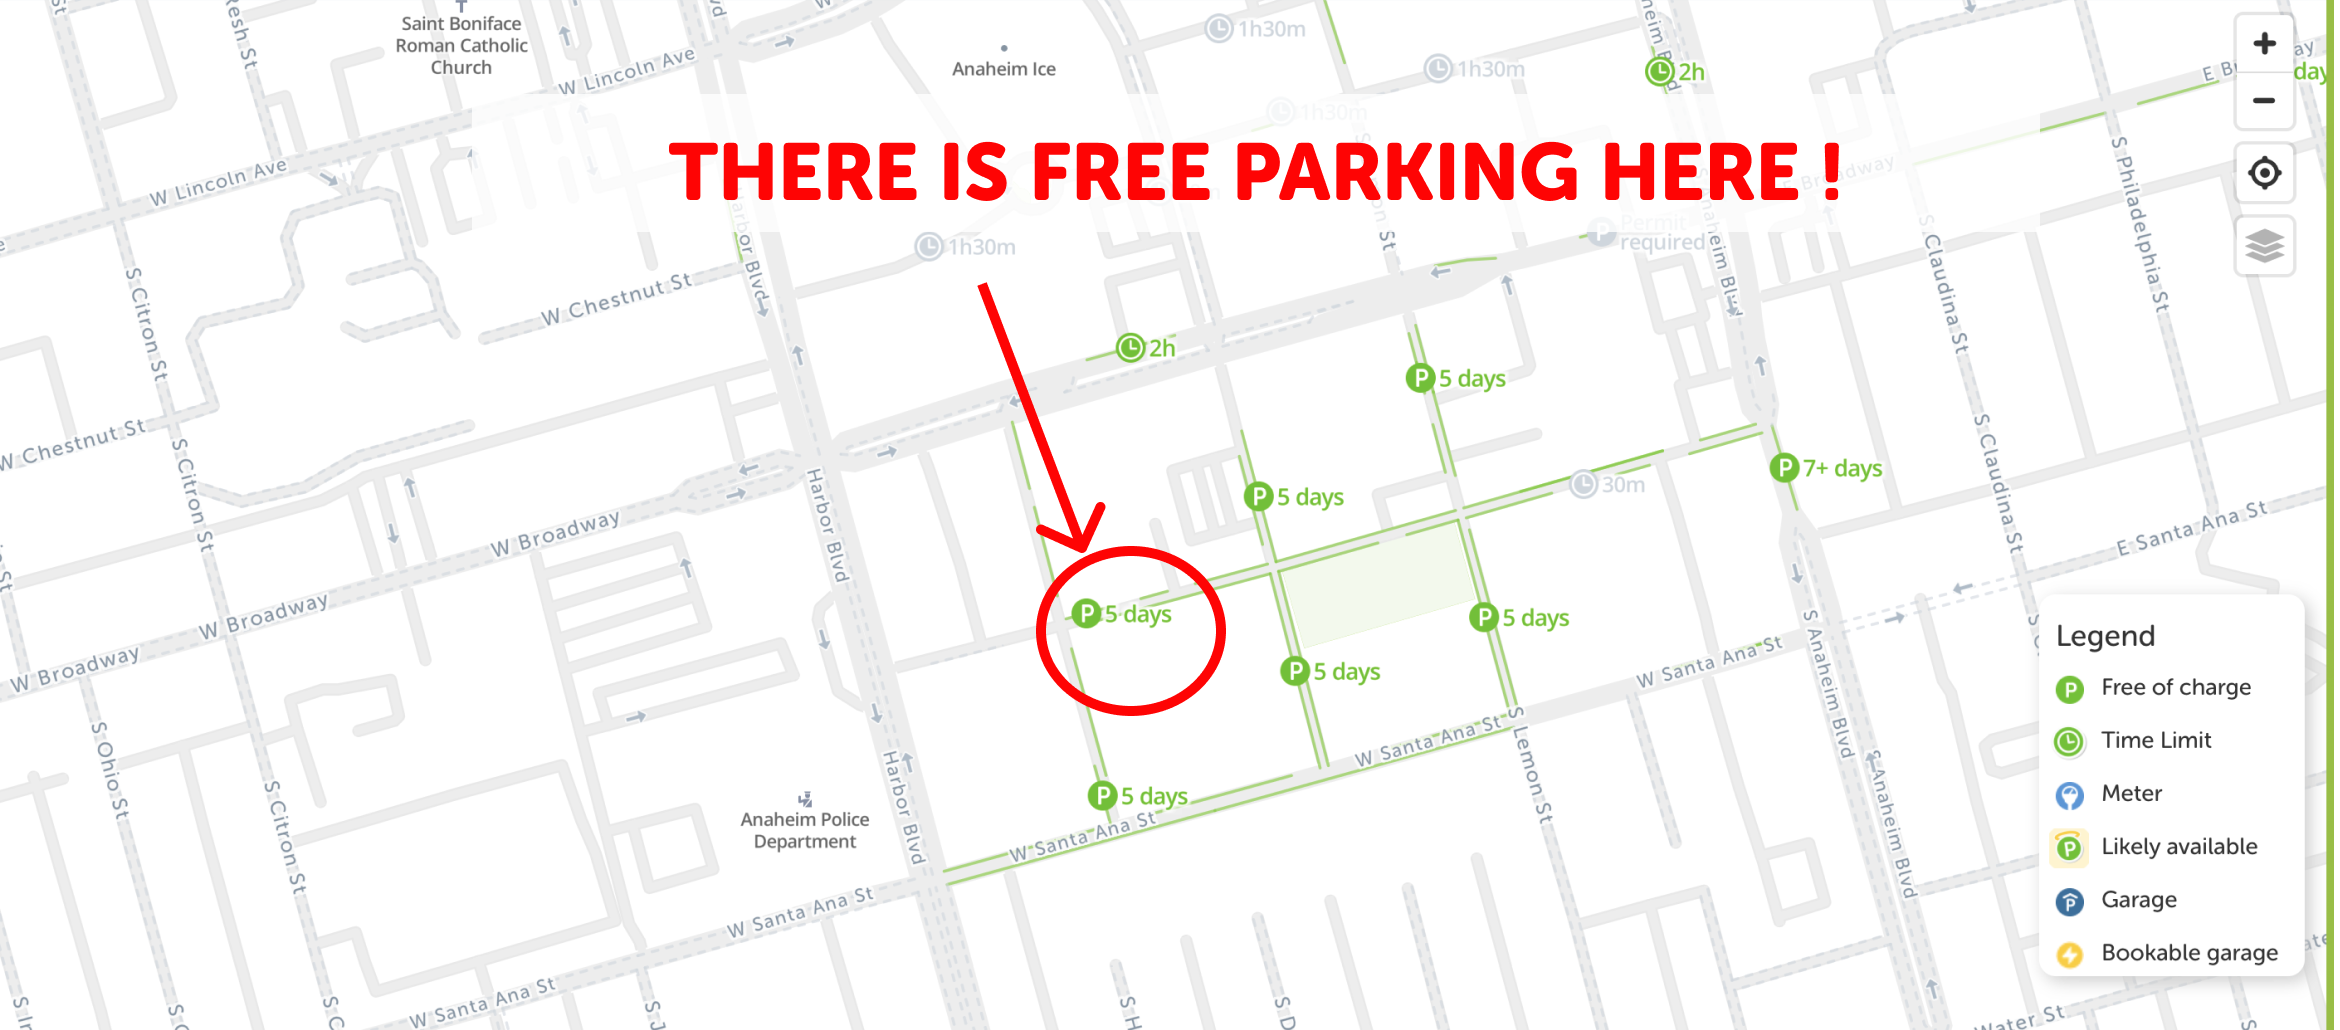 map of free parking in Anaheim - SpotAngels